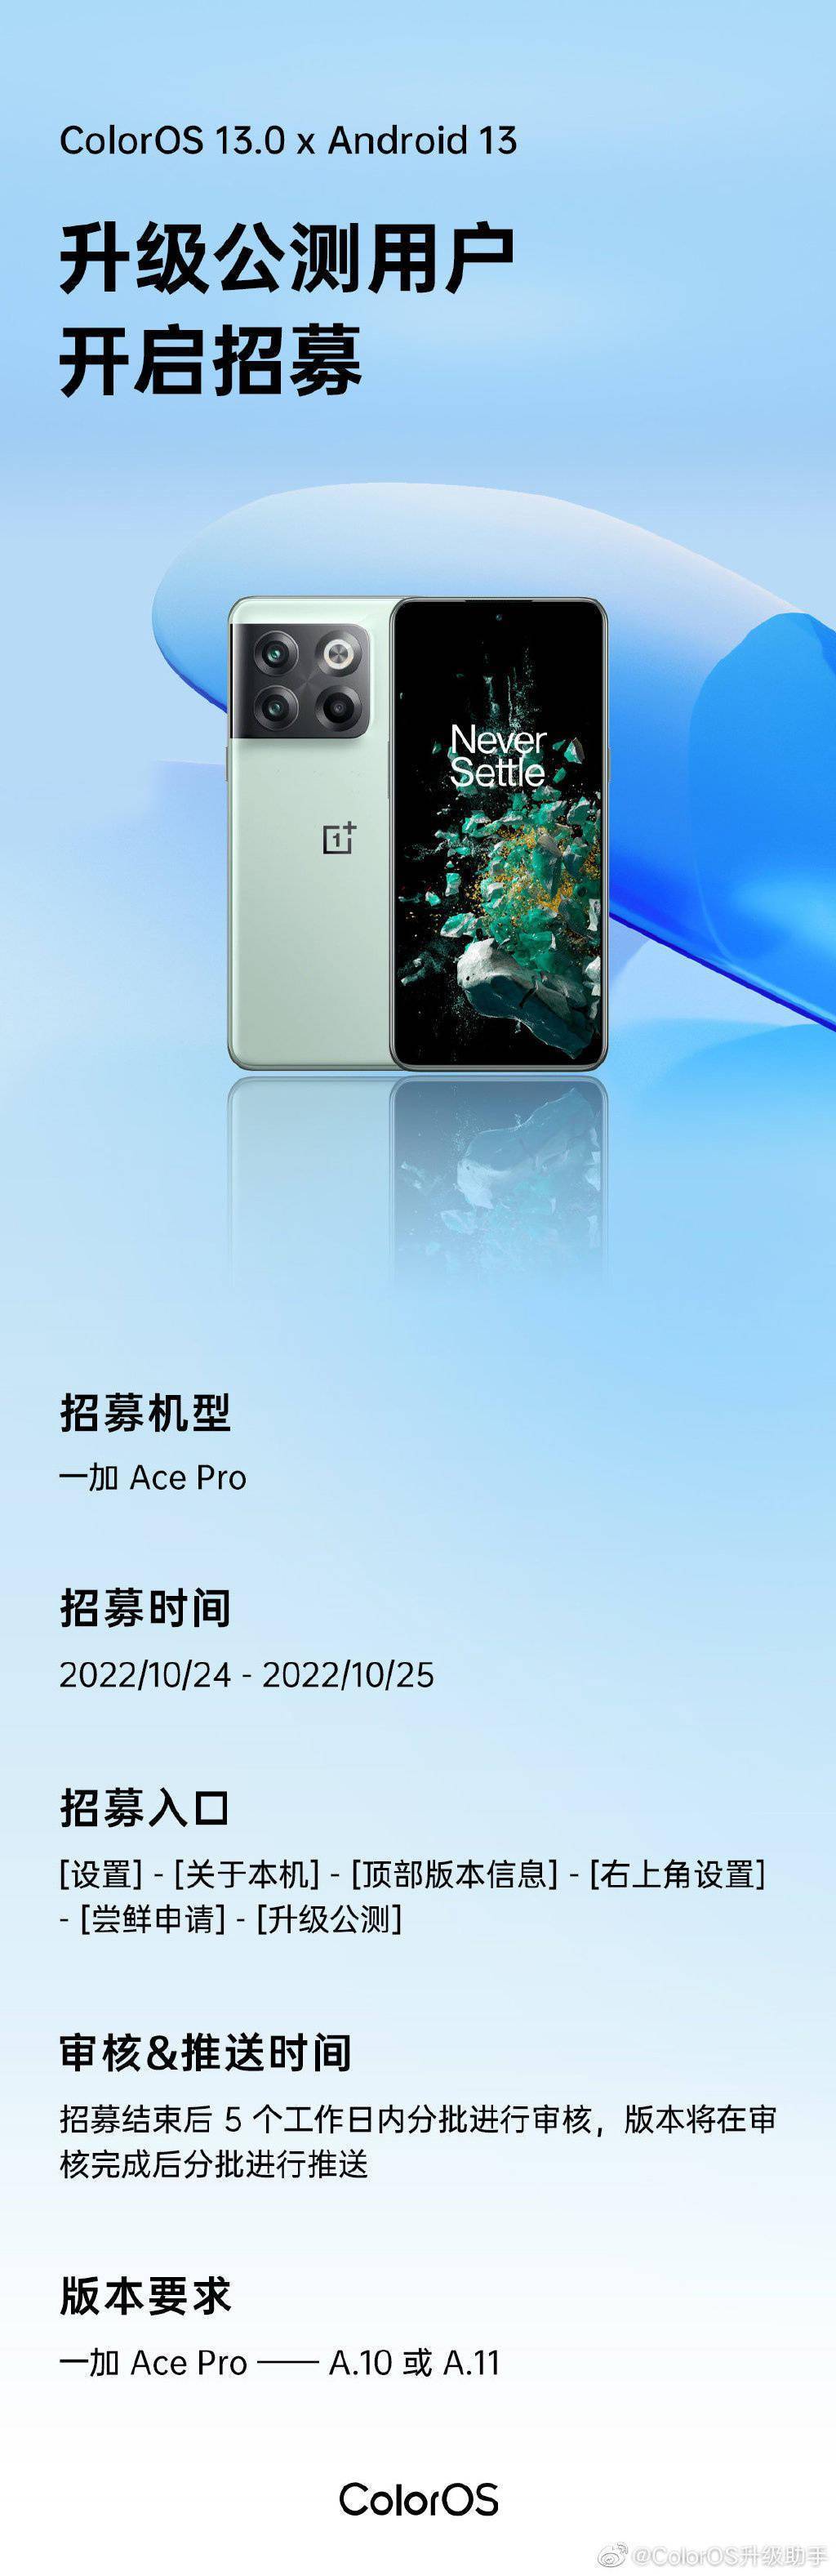 一加 Ace Pro 开启 ColorOS 13.0 安卓 13 升级公测招募